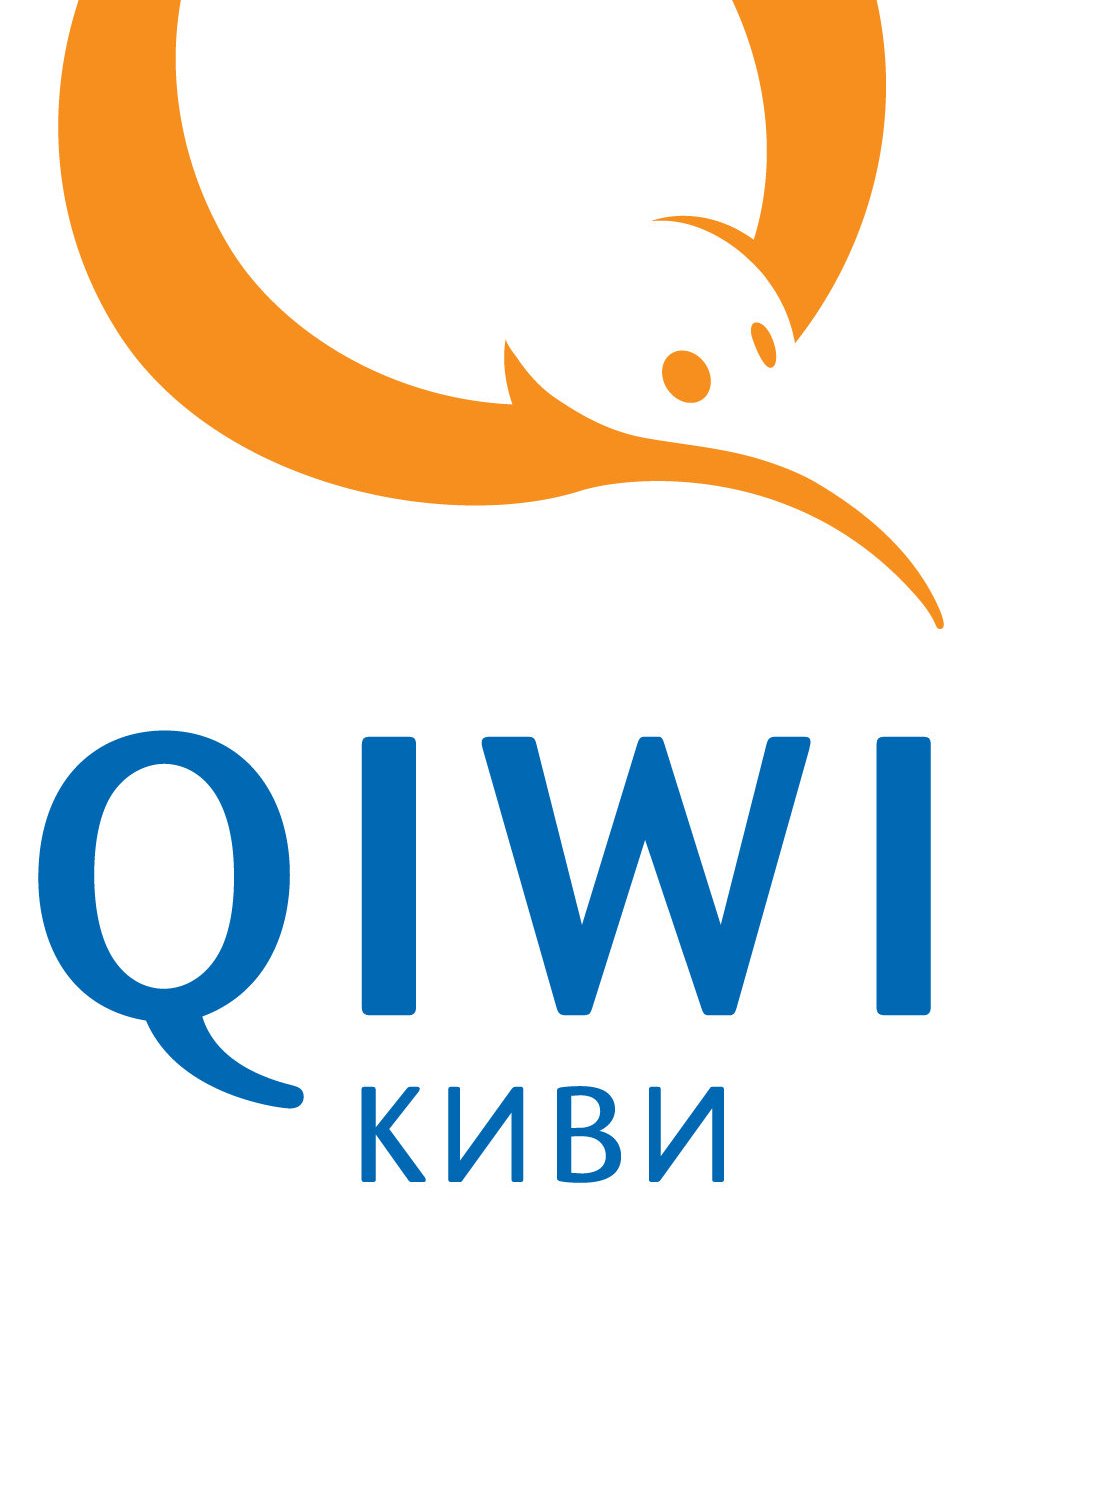 Получай qiwi. QIWI кошелек. QIWI логотип. Иконка киви кошелька. QIWI без фона.